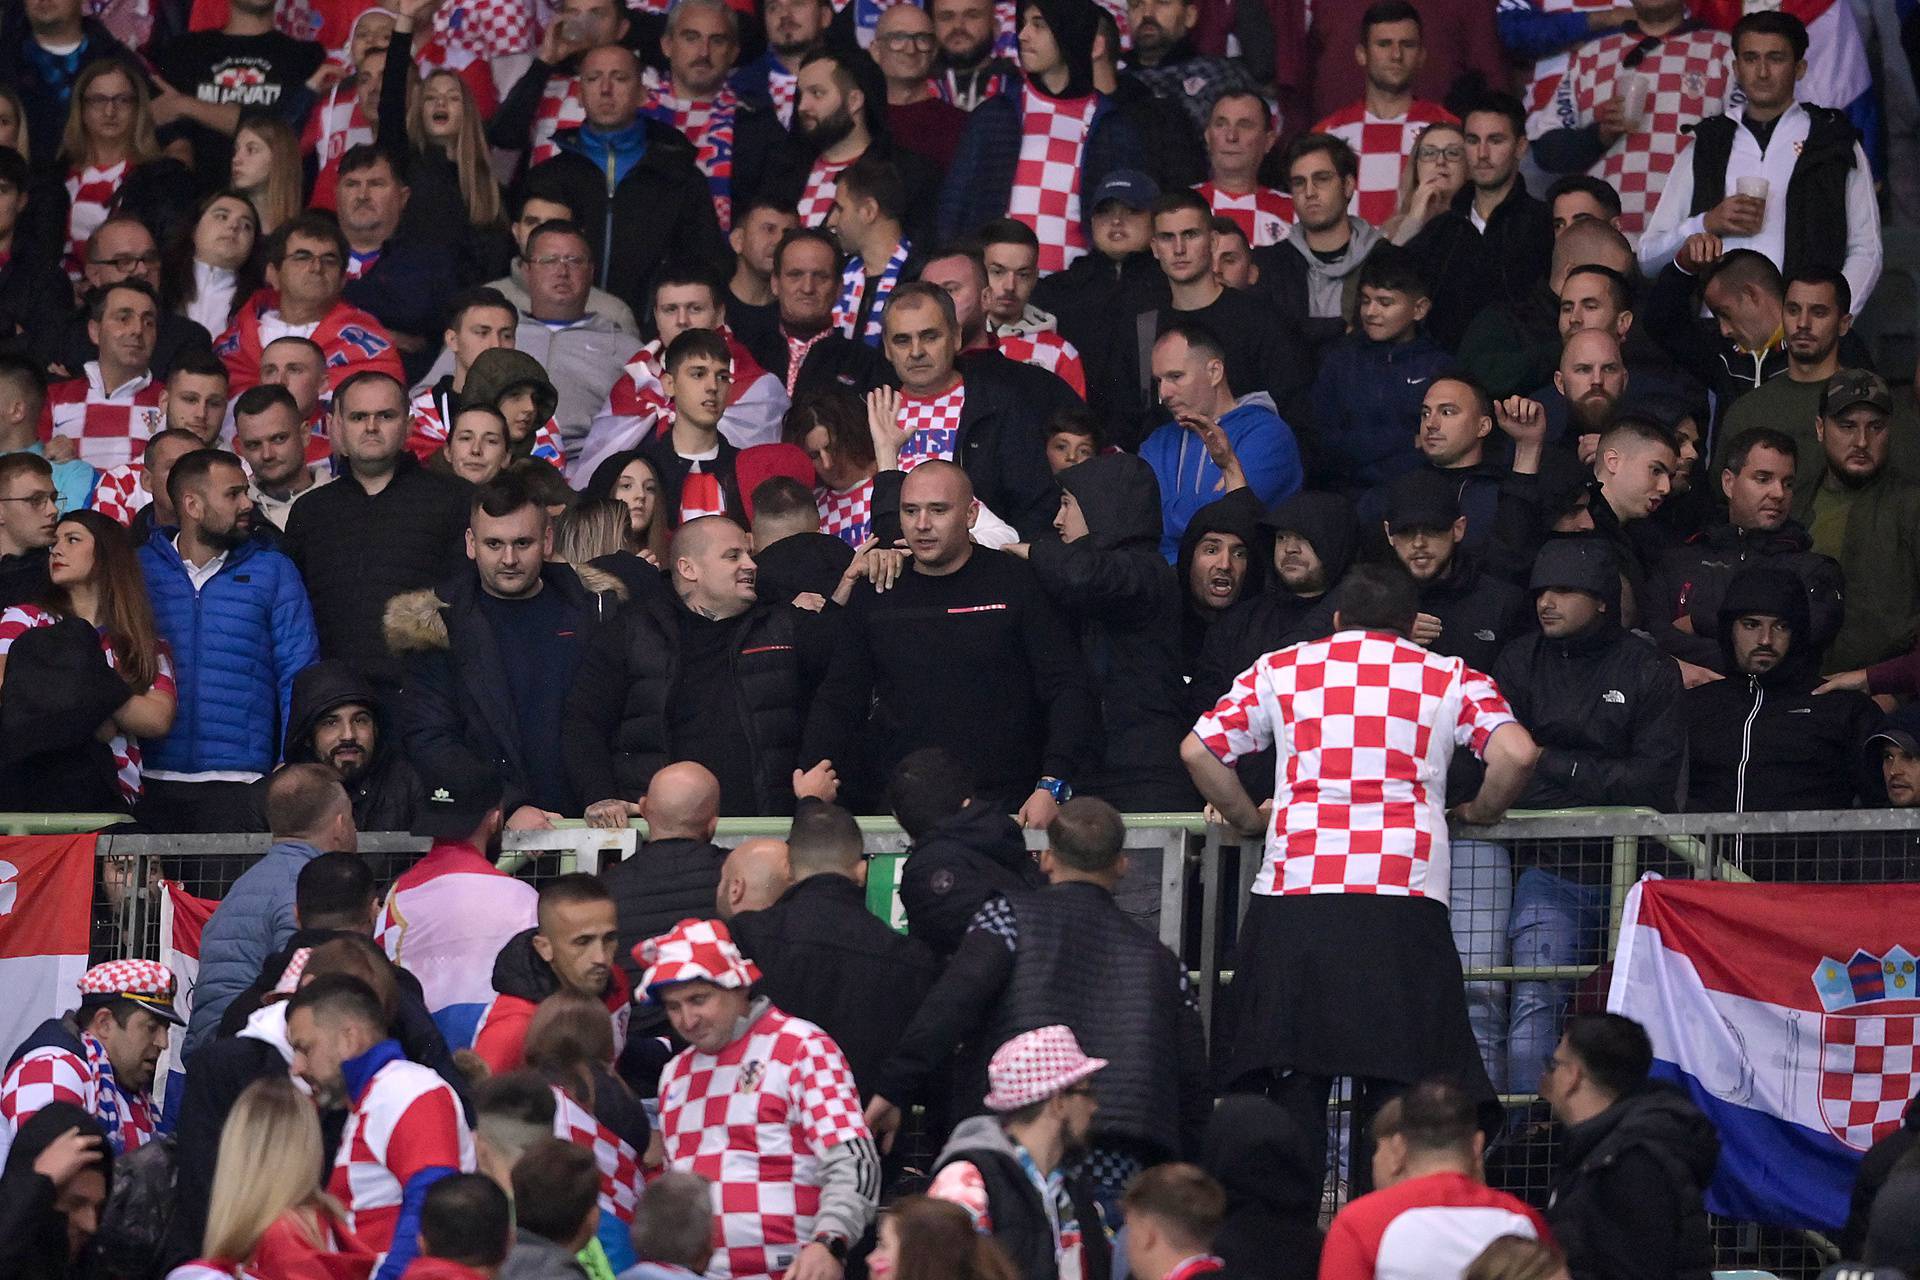 Policija intervenirala na tribini s hrvatskim navijačima